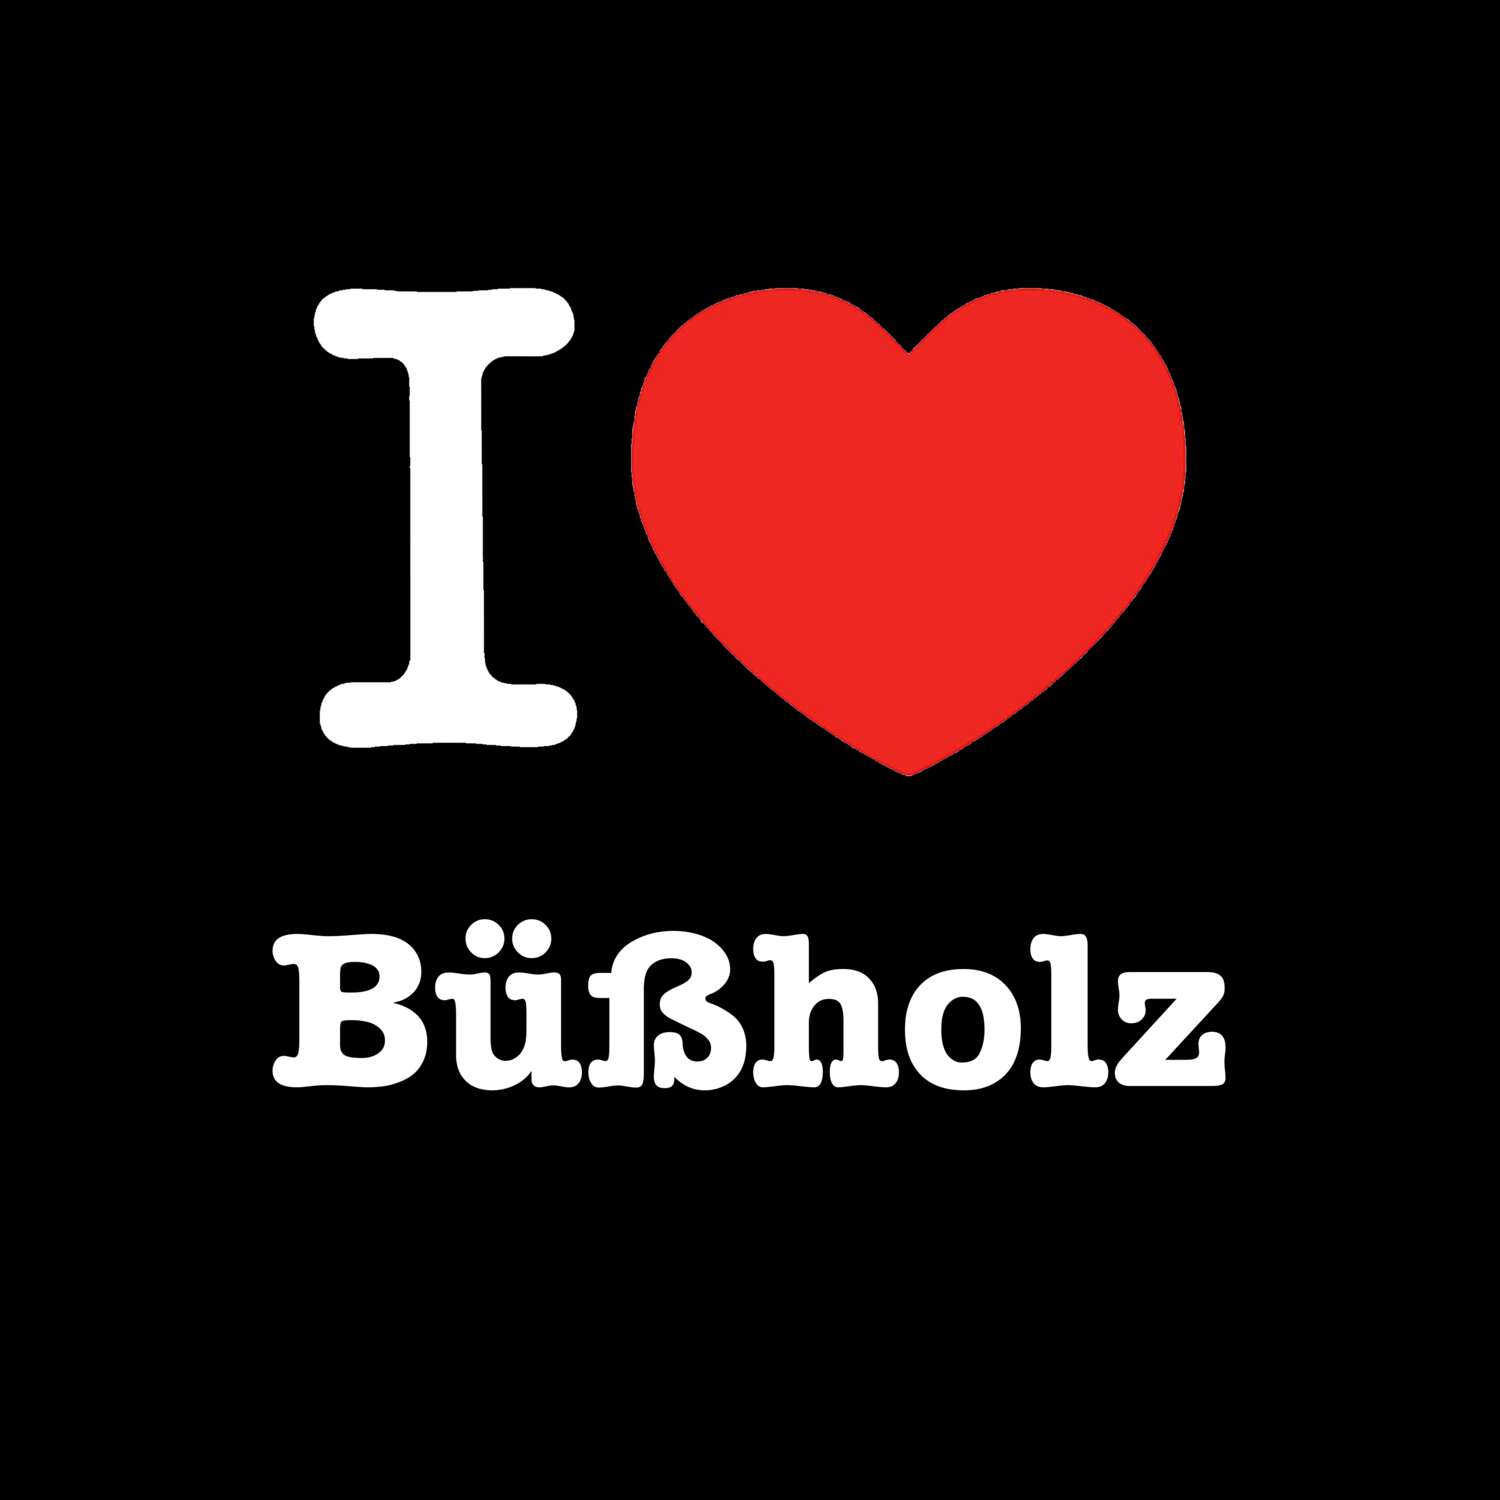 Büßholz T-Shirt »I love«